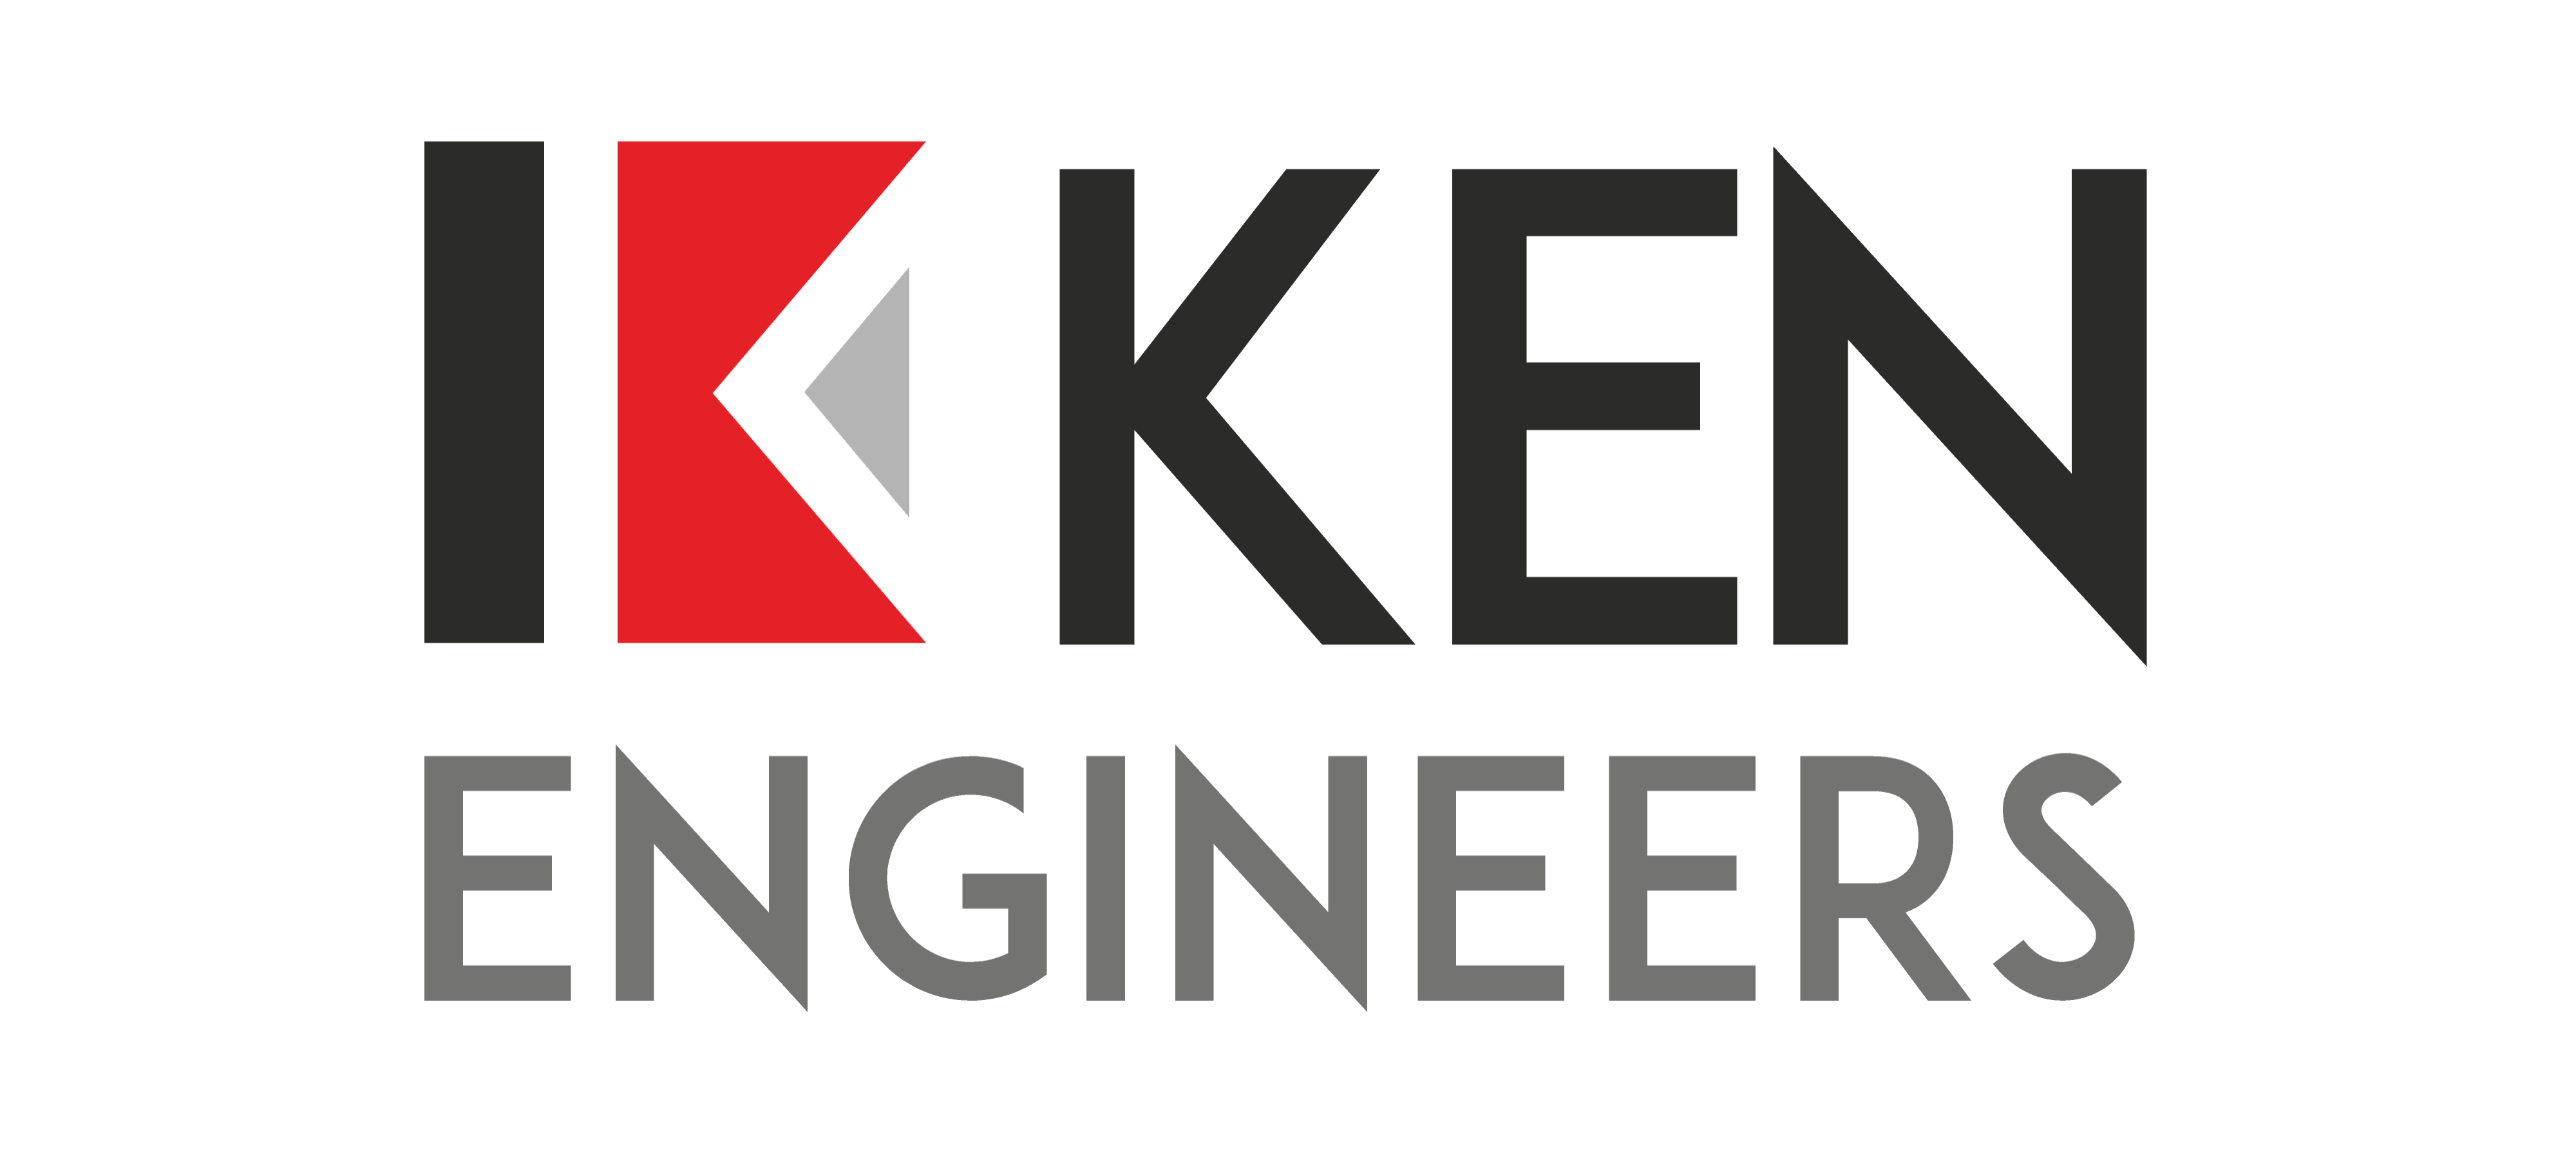 Ken engineers image